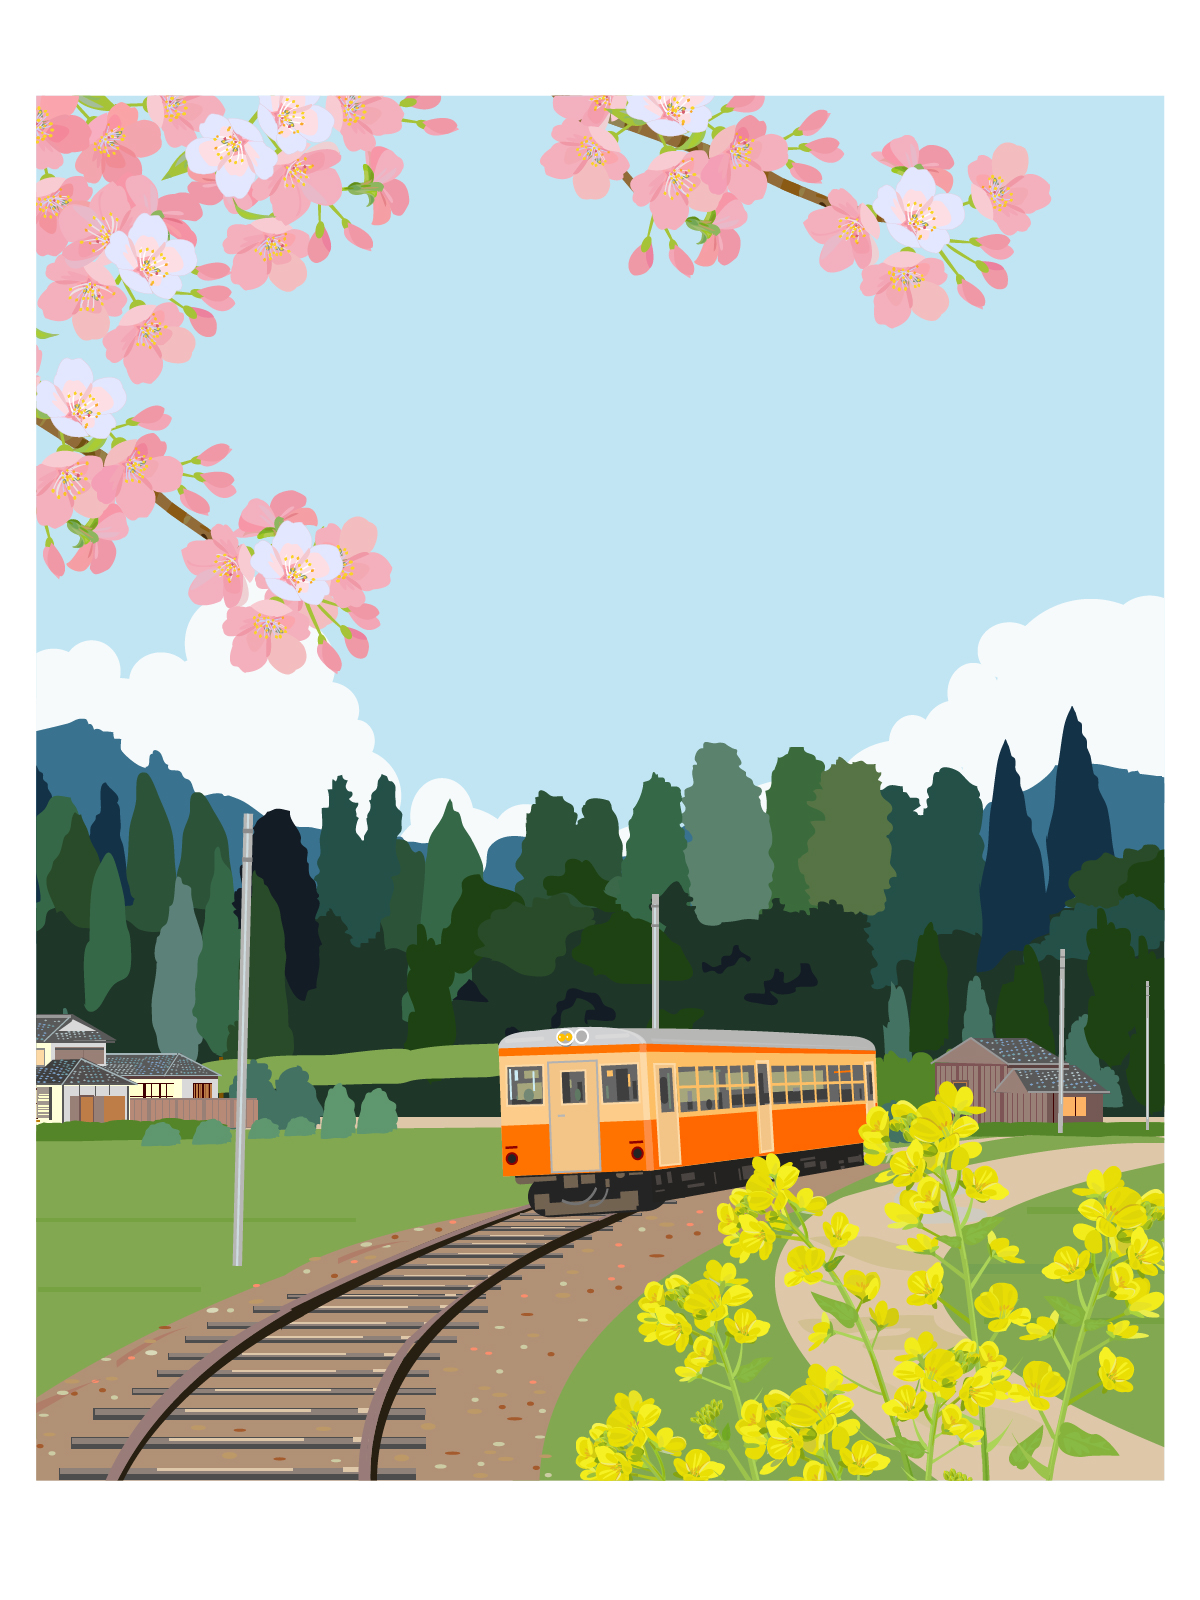 Umi ストックイラスト Ar Twitter 春の風景のイラストを描きました 田舎を走るローカル線と桜と菜の花です T Co C0odhz9yst Twitter